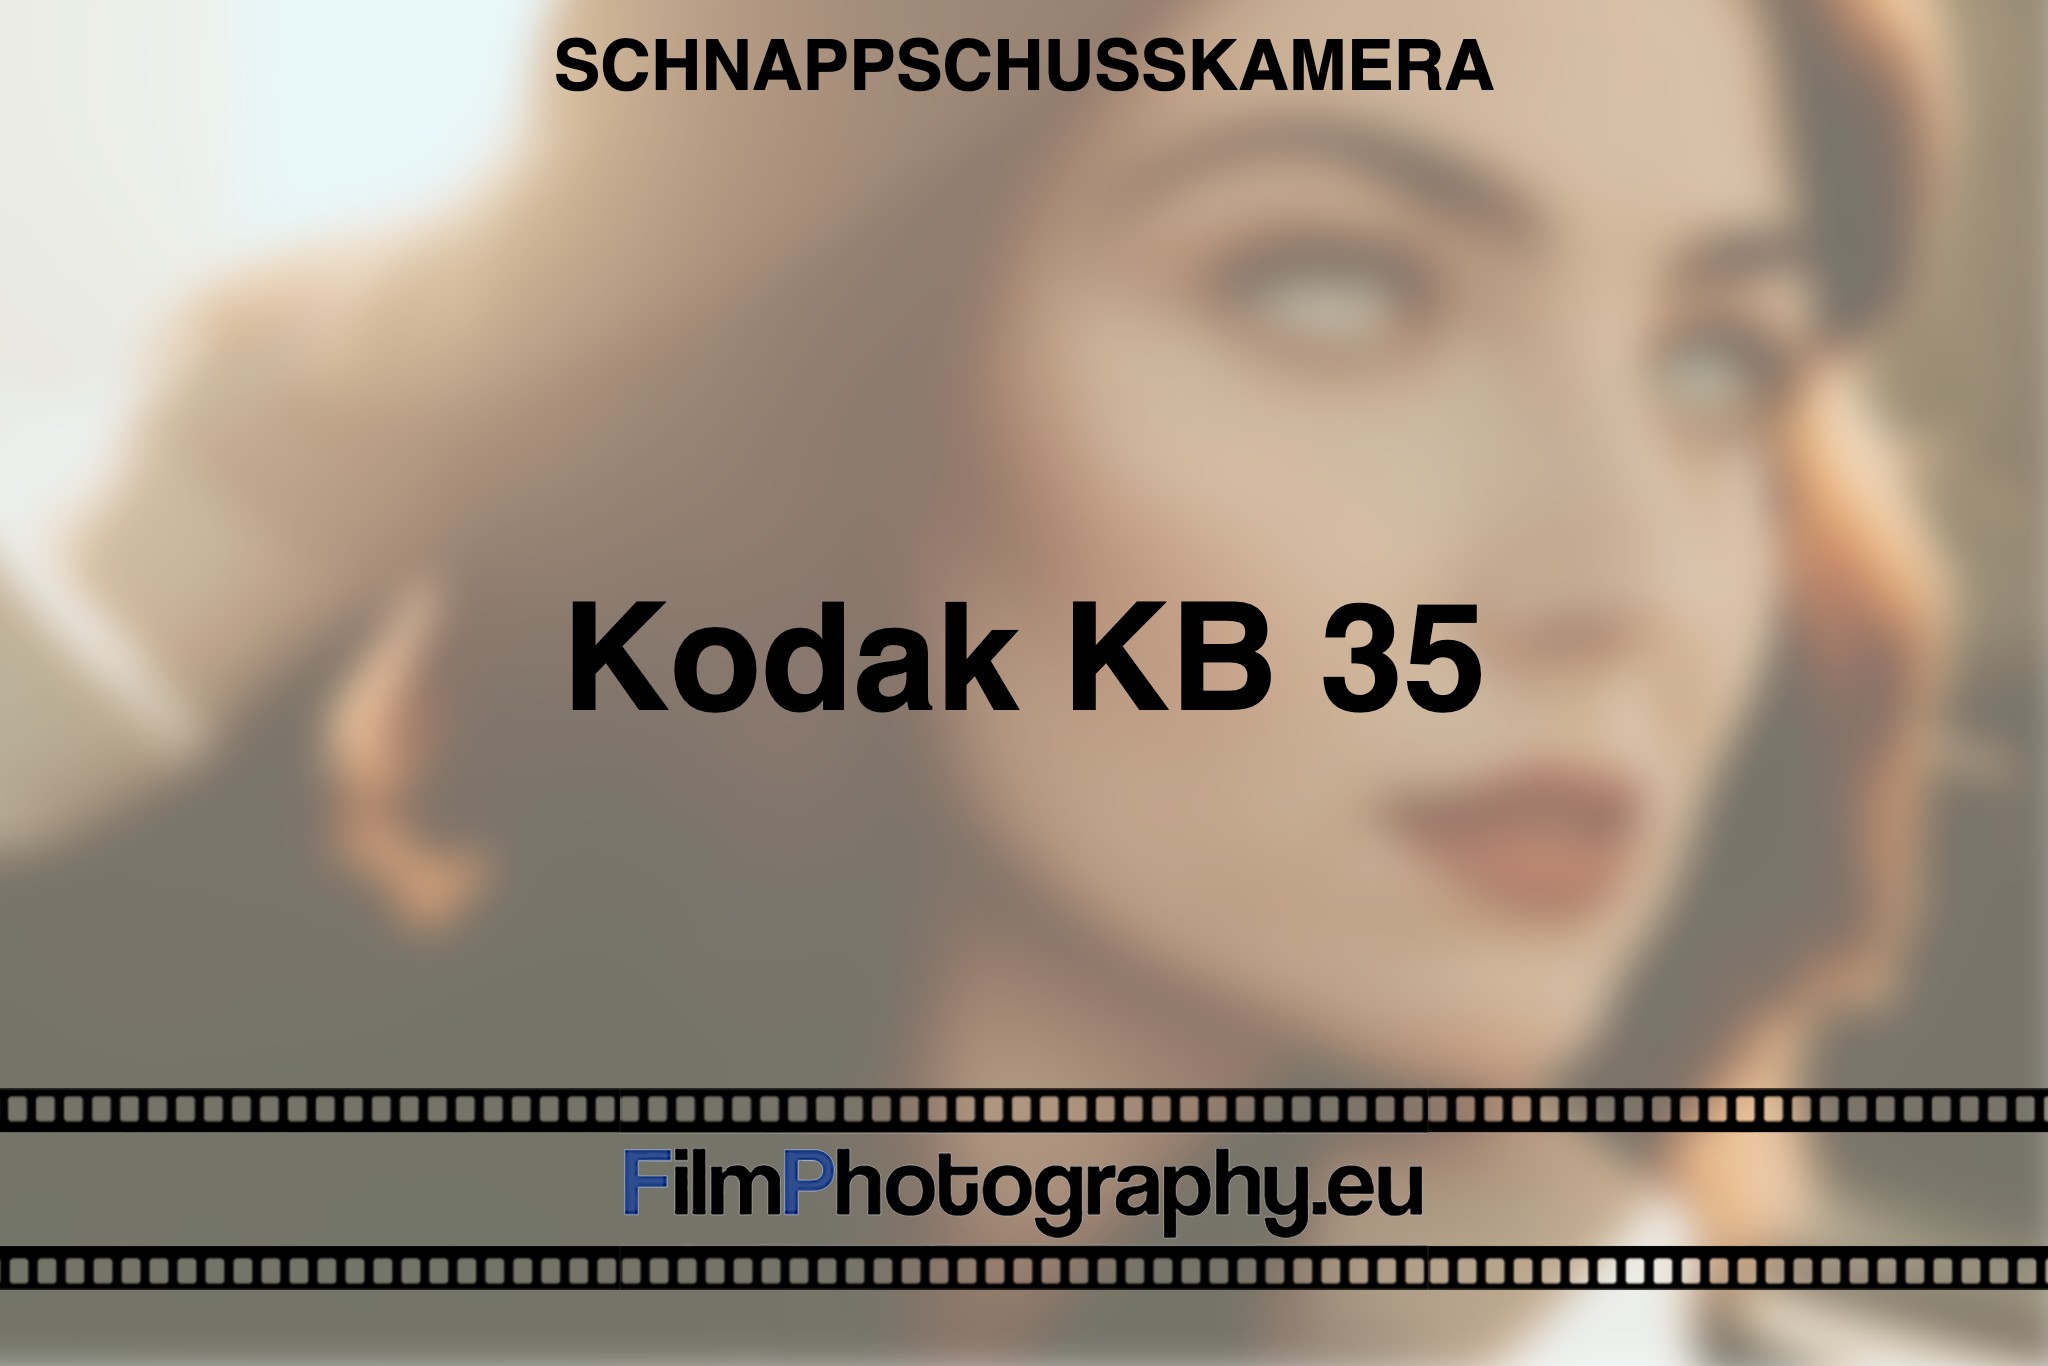 kodak-kb-35-schnappschusskamera-bnv